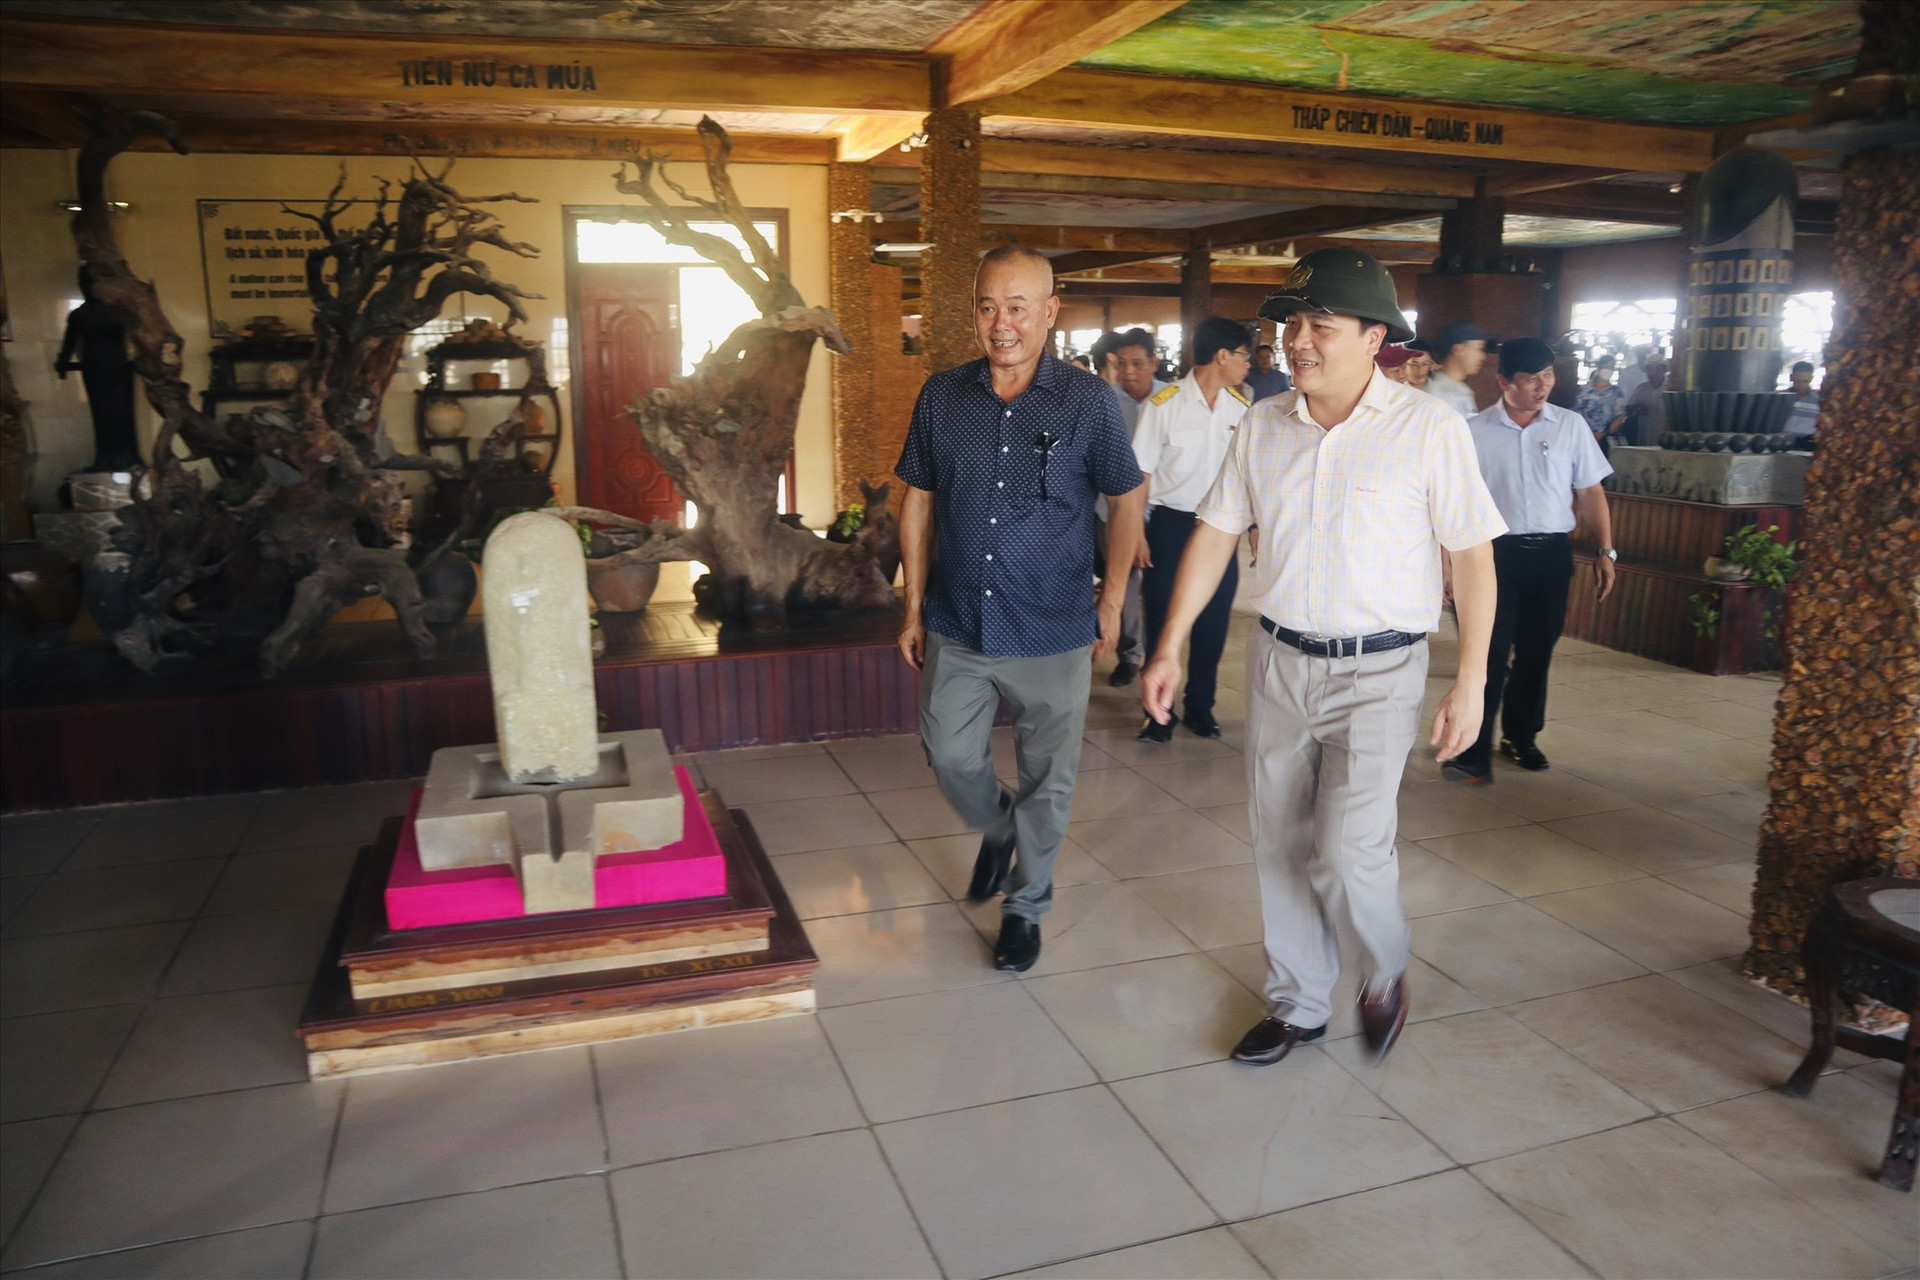 Phó Chủ tịch UBND tỉnh Trần Văn Tân kiểm tra thực tế tại khu vực bảo tàng trong khuôn viên khu du lịch. Ảnh: Q.T